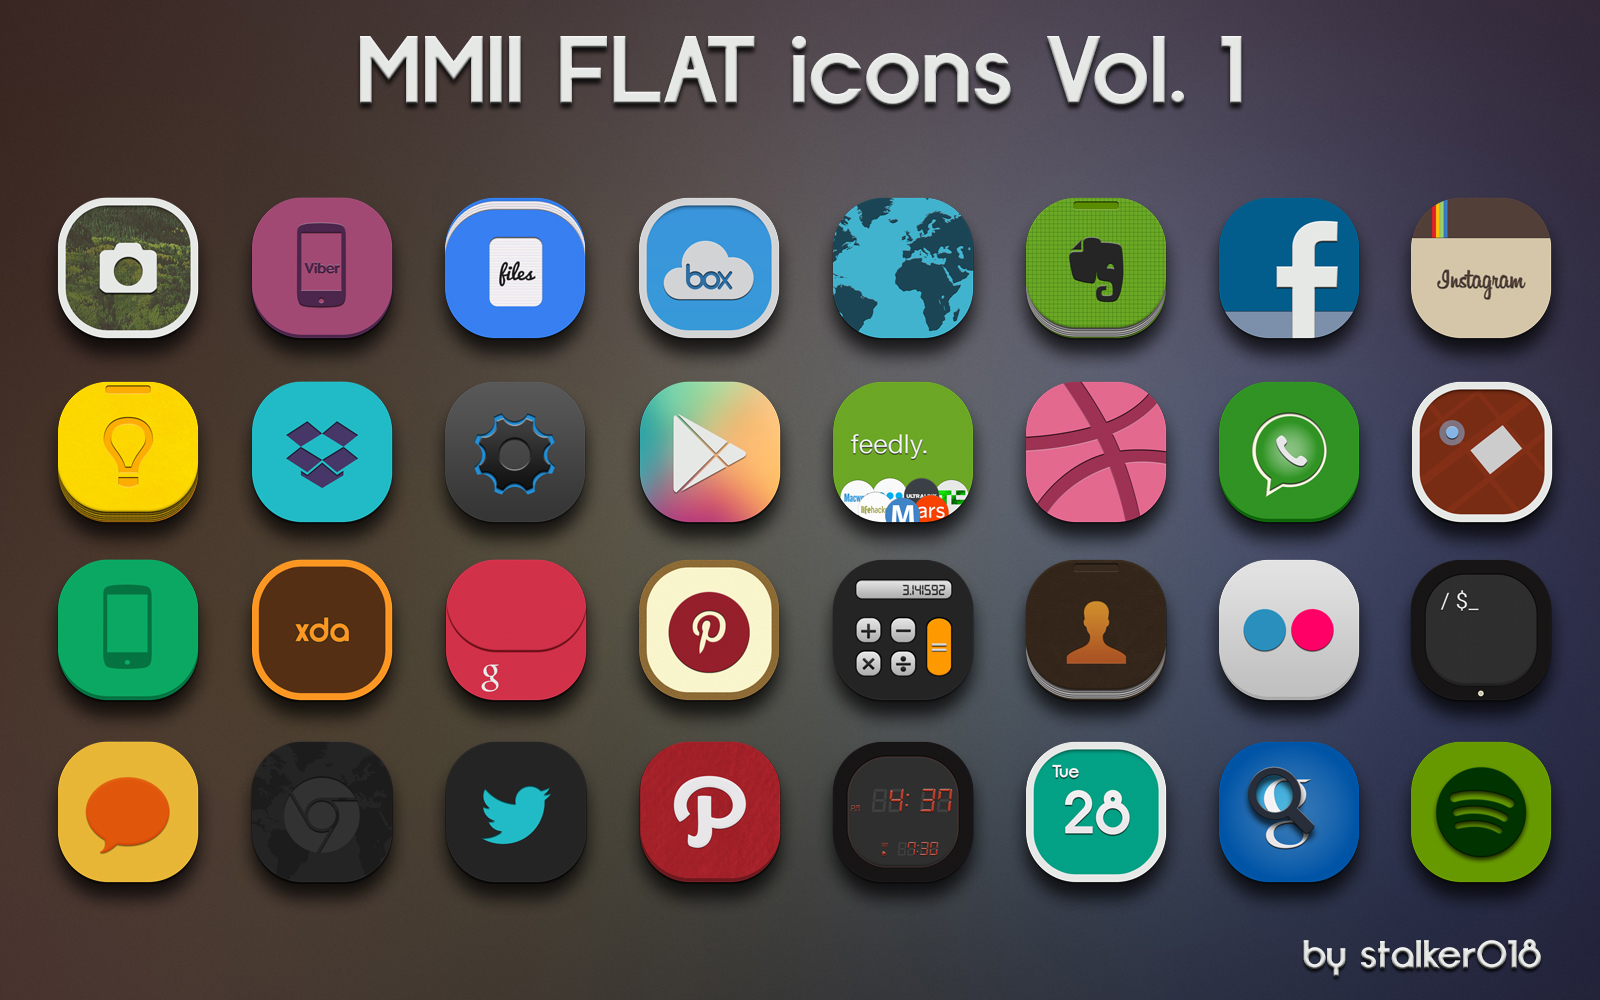 MMII FLAT icons Vol.1